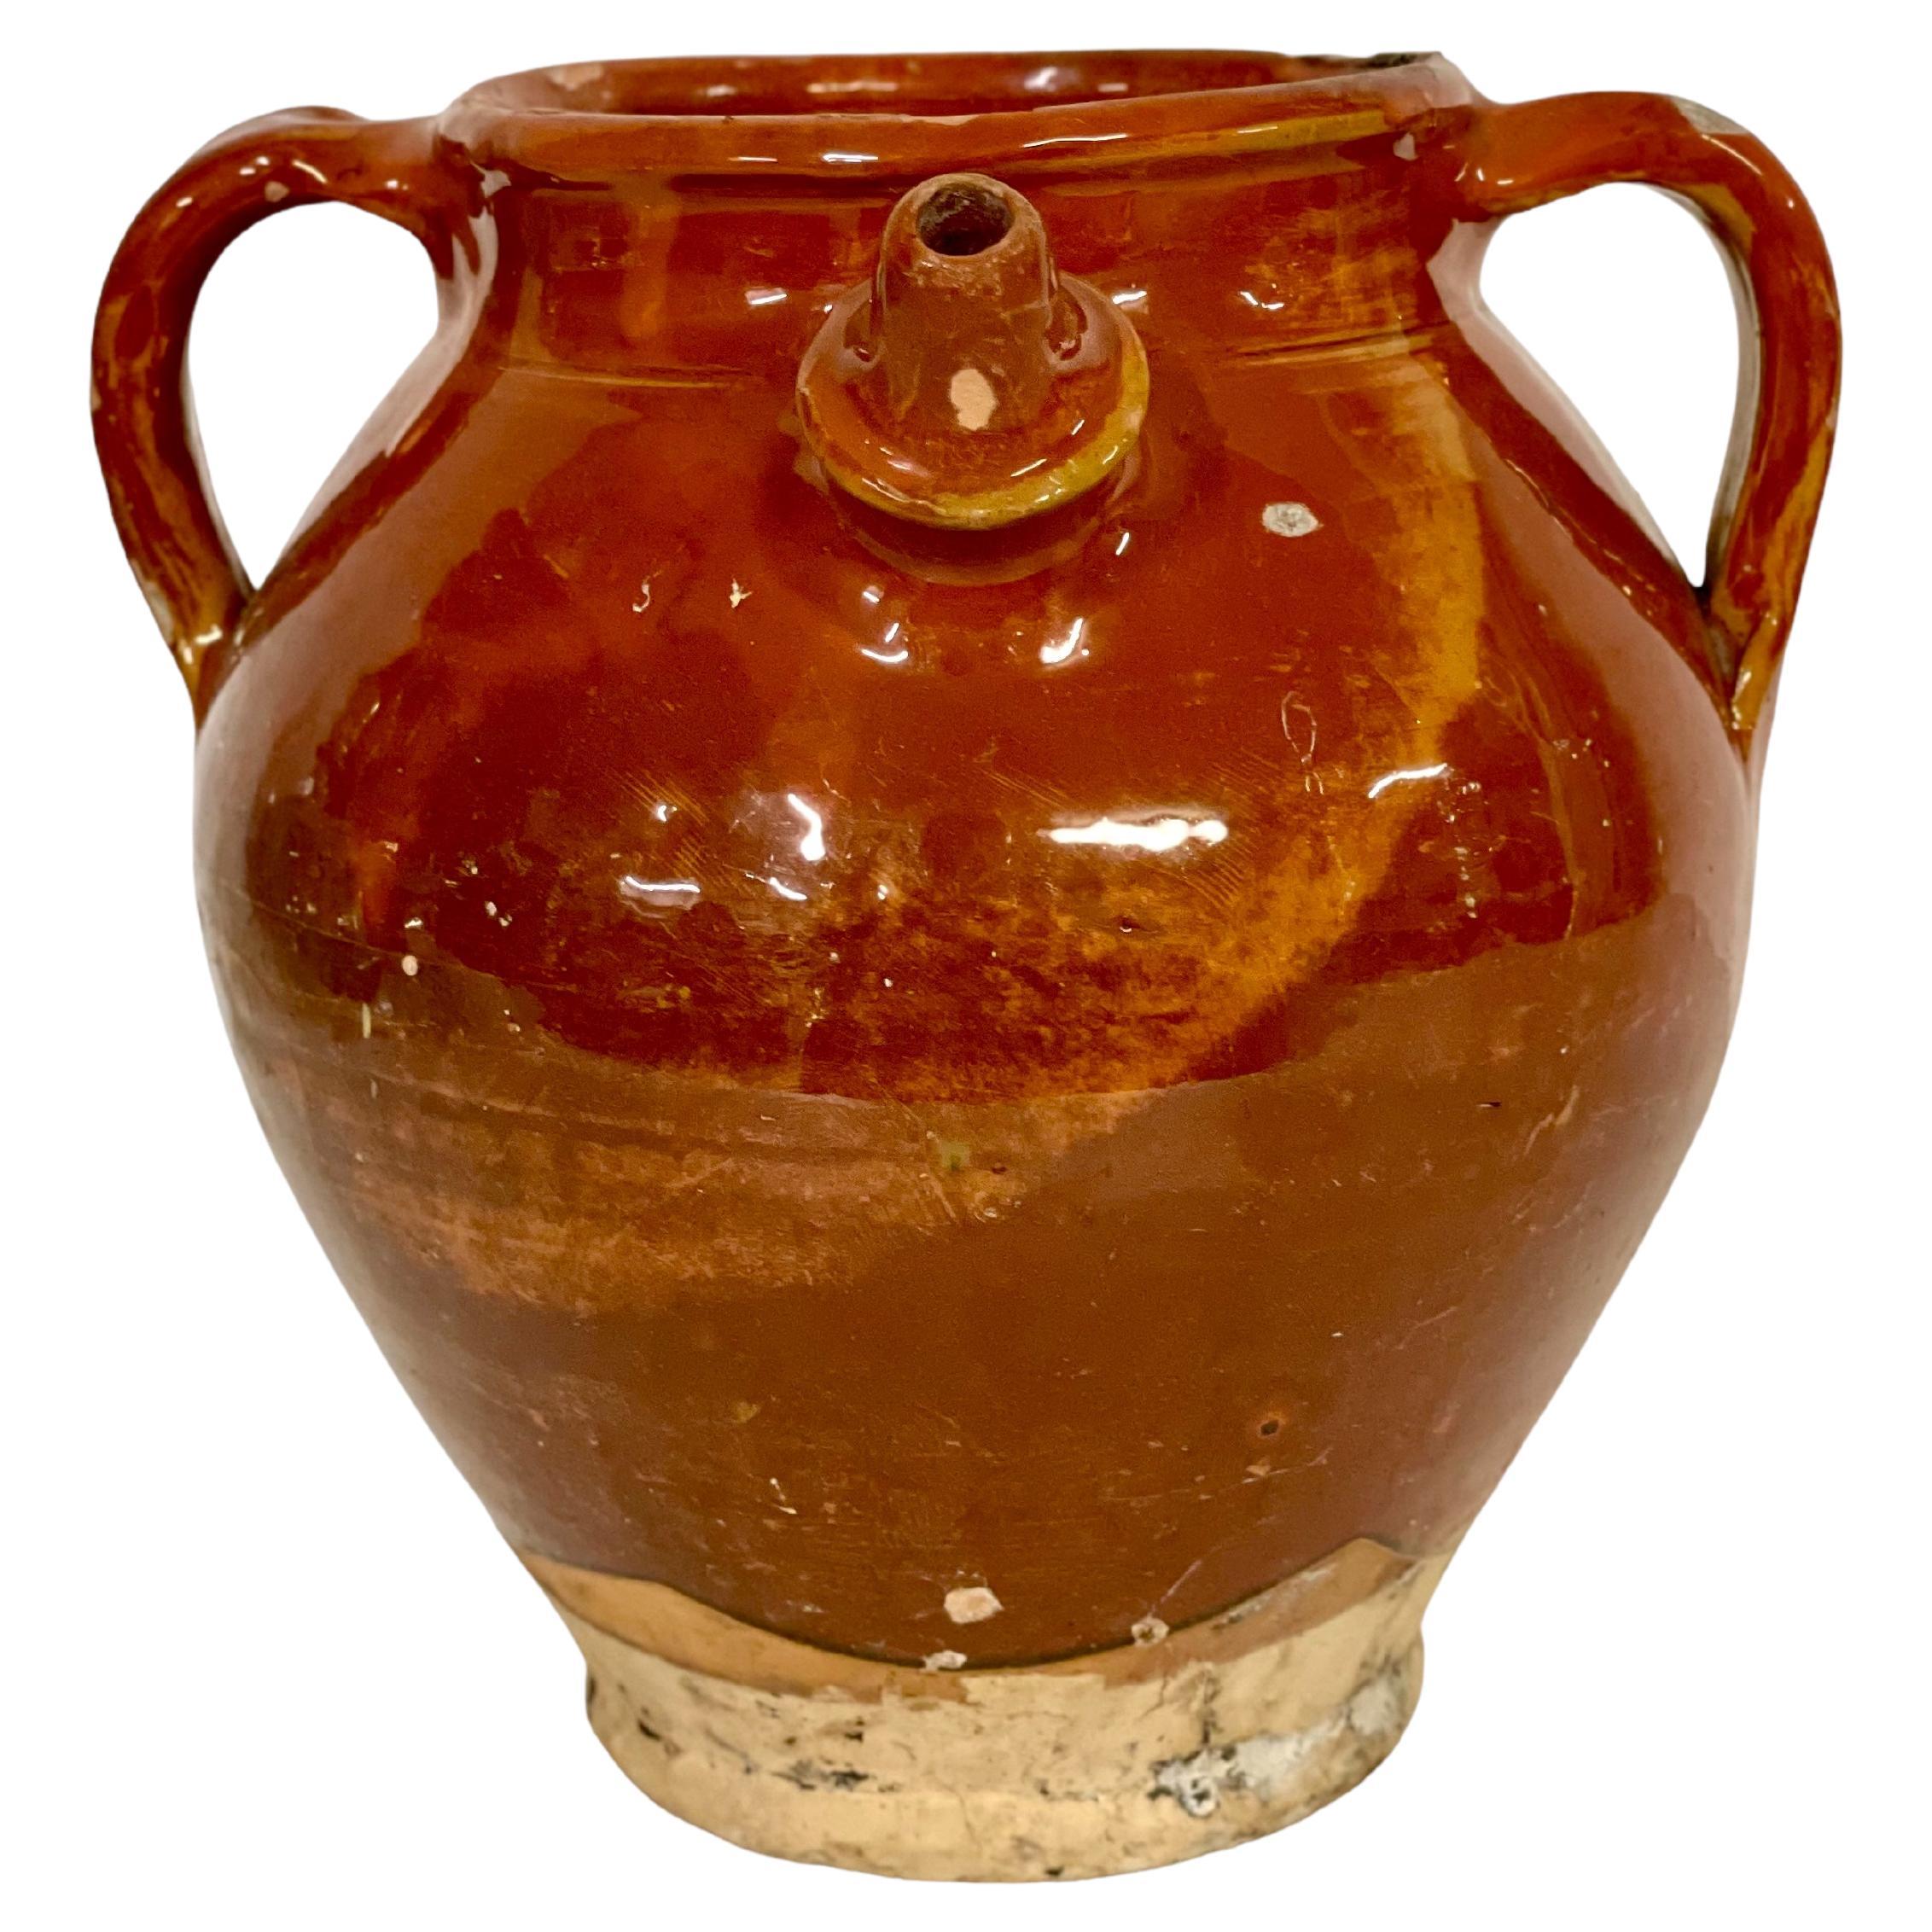 Glasierter Pouring-Krug aus der Dordogne-Region in Frankreich, 19. Jahrhundert